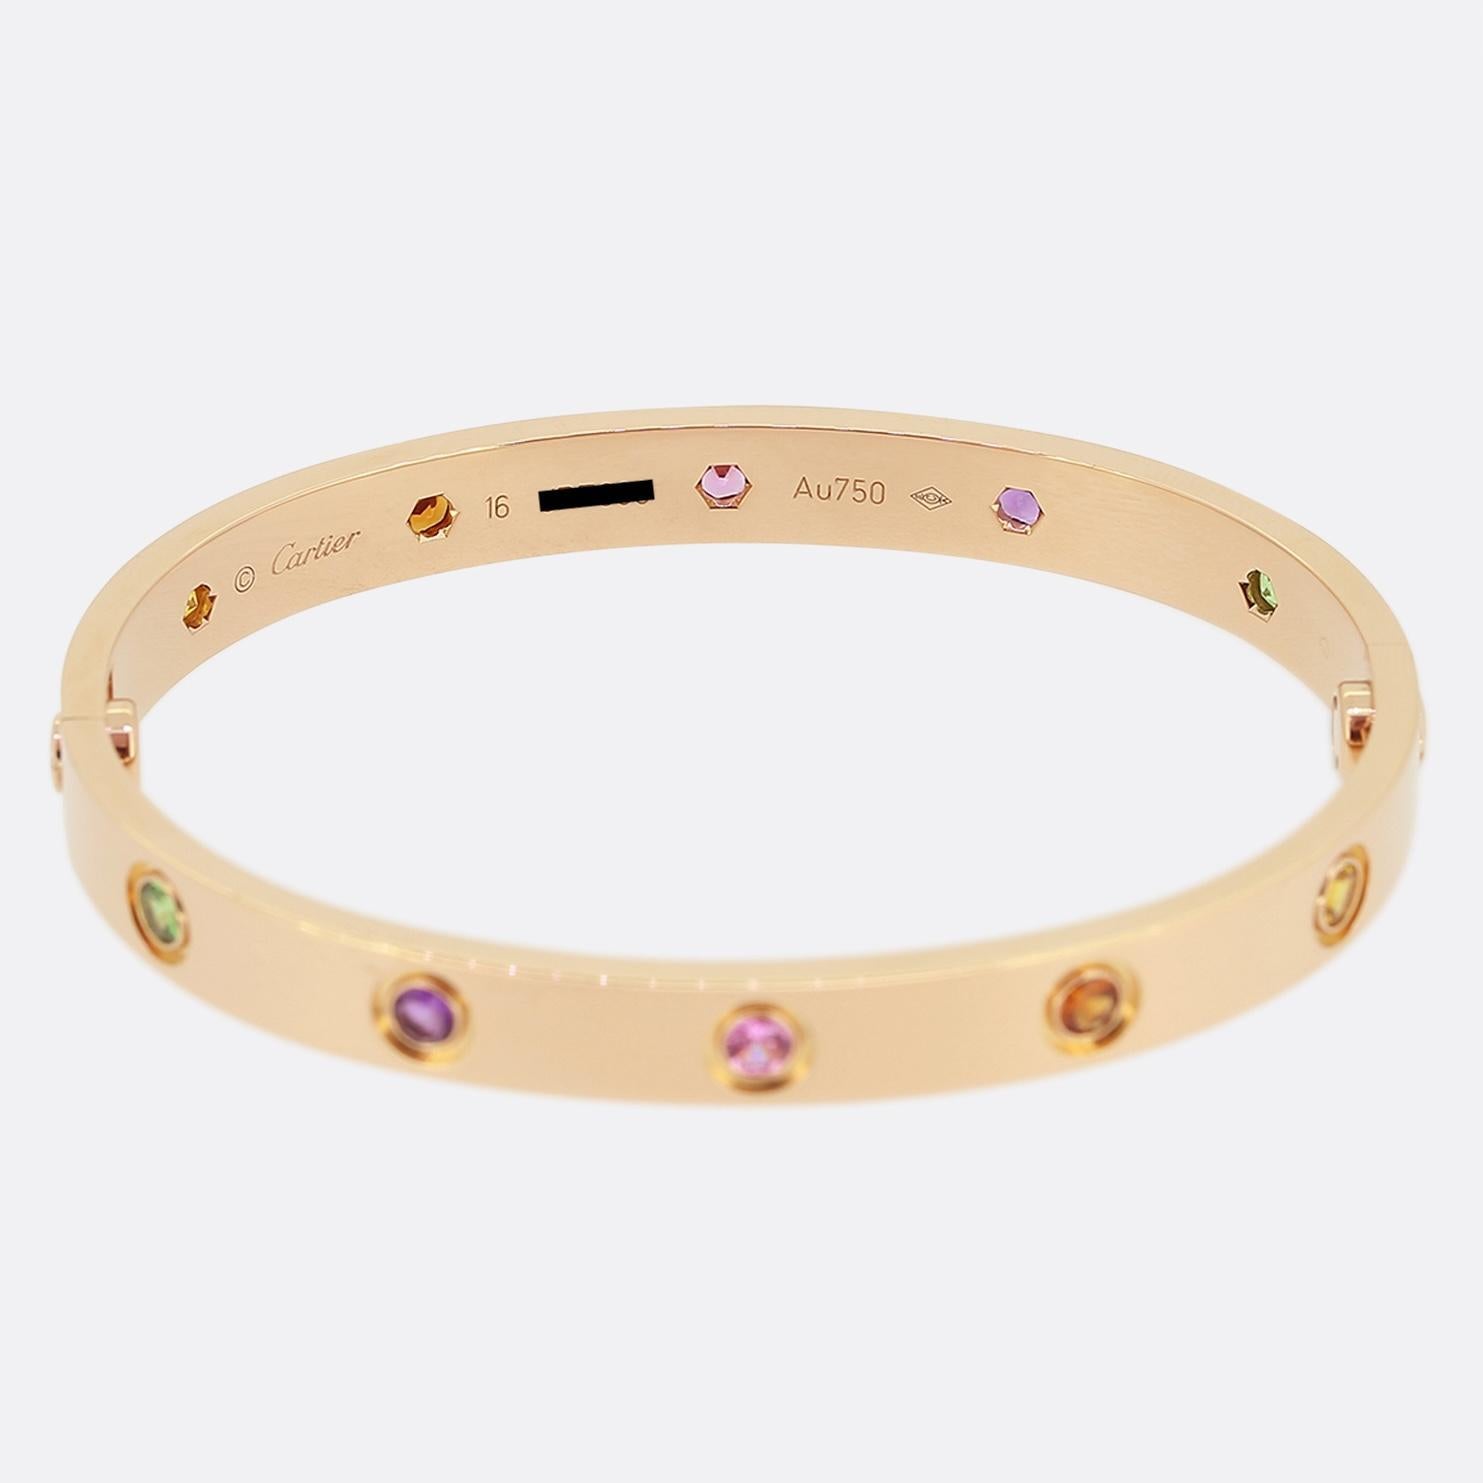 Voici un bracelet en or rose 18ct de la maison de joaillerie de luxe de renommée mondiale Cartier. Ce bracelet fait partie de la collection LOVE et présente dix pierres précieuses de couleur à côté du motif emblématique de la vis : améthystes,